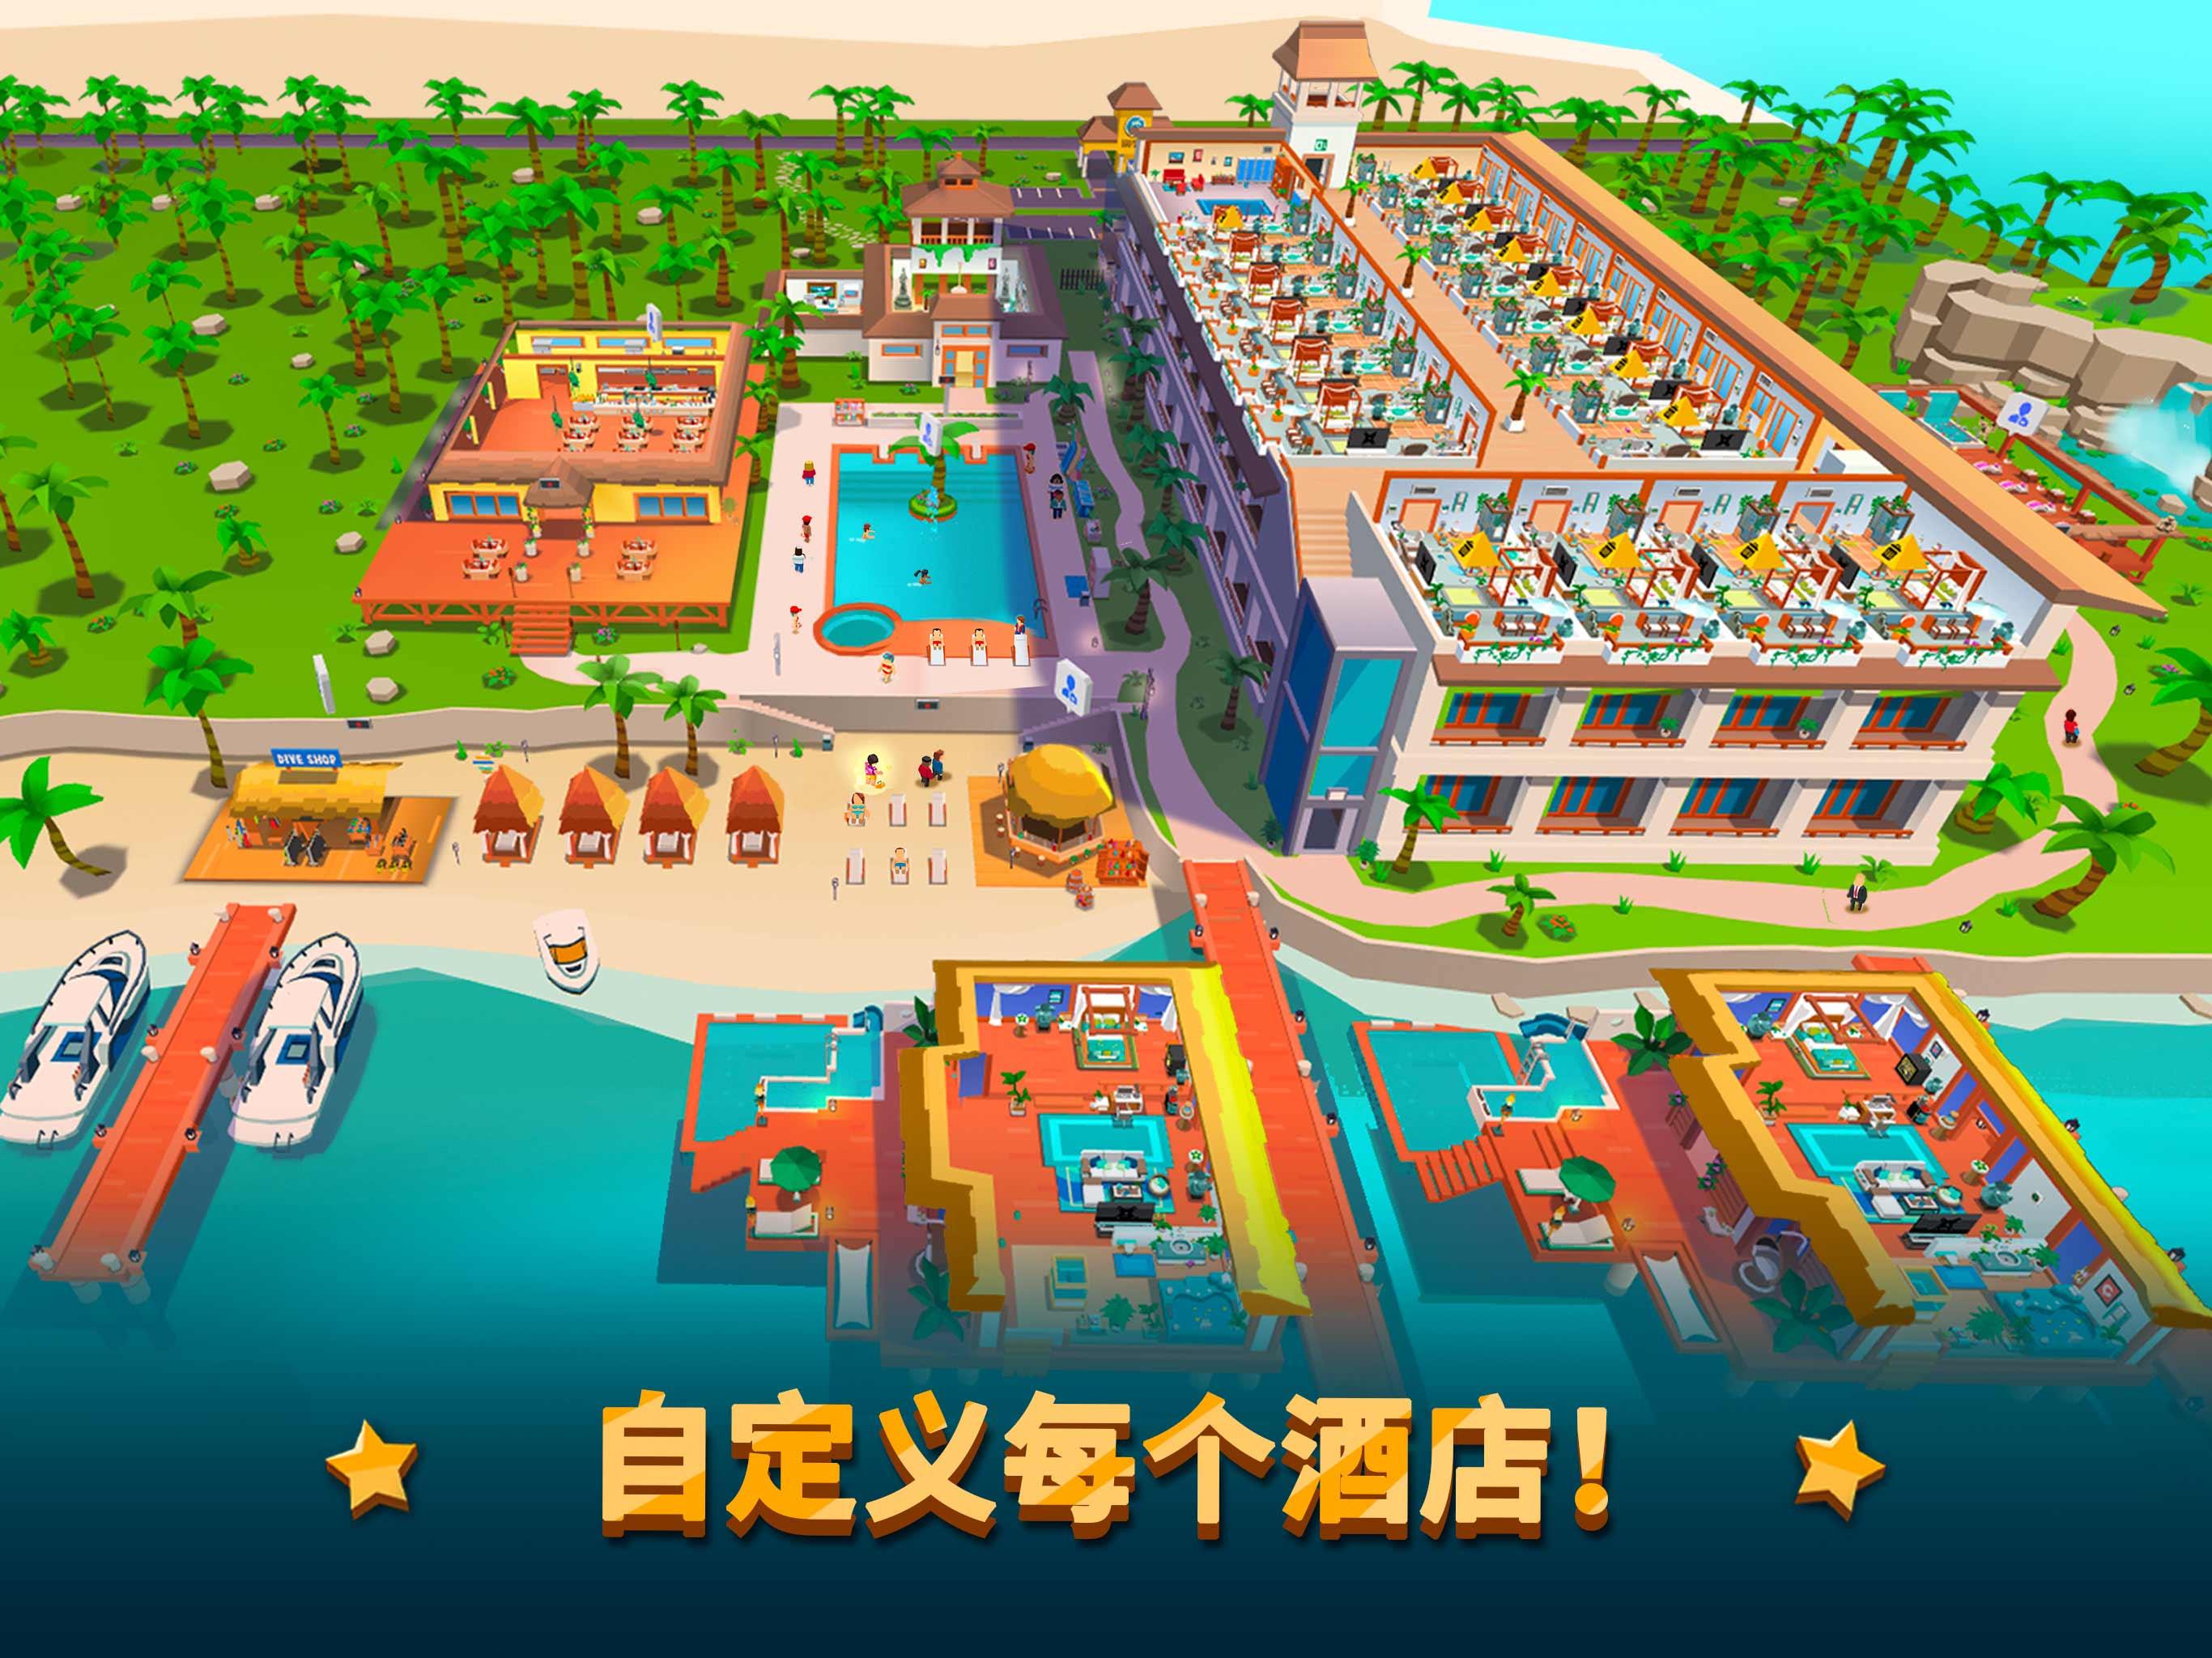 酒店帝国大亨 Hotel Empire Tycoon 休闲 游戏 经营 模拟安卓下载 安卓版apk 免费下载